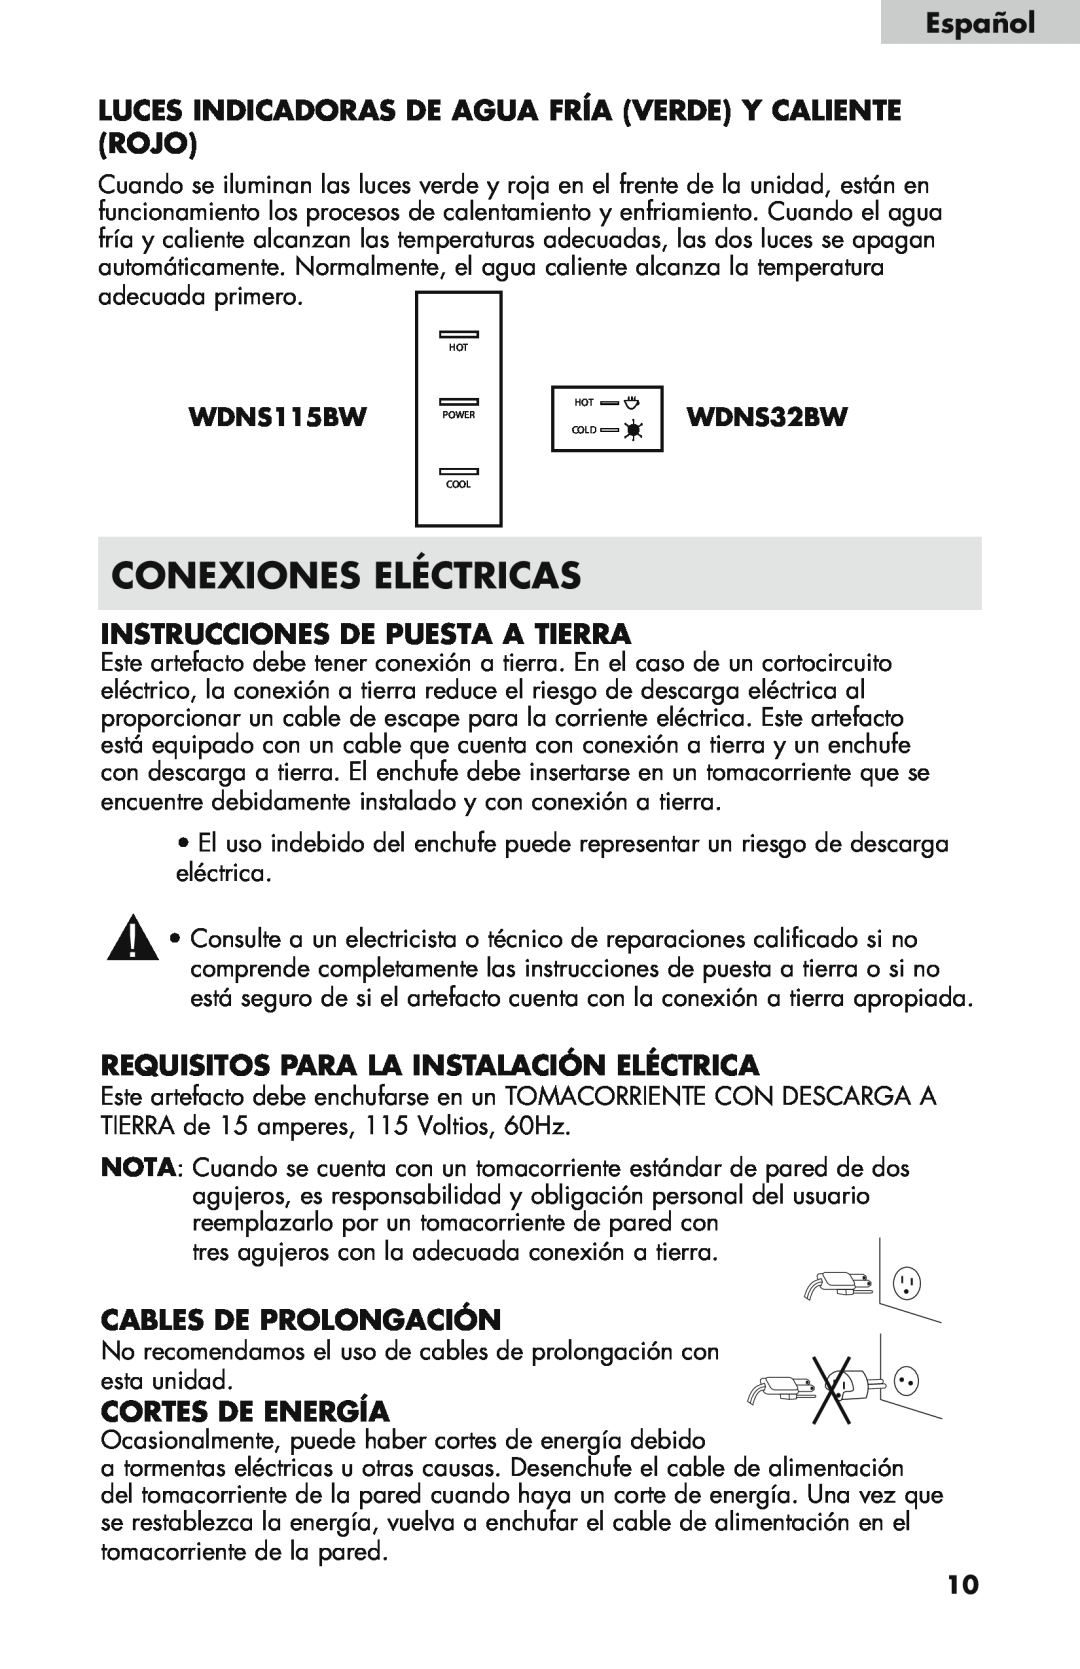 Haier WDNS32BW Conexiones Eléctricas, Instrucciones De Puesta A Tierra, Requisitos para la instalación eléctrica, Español 